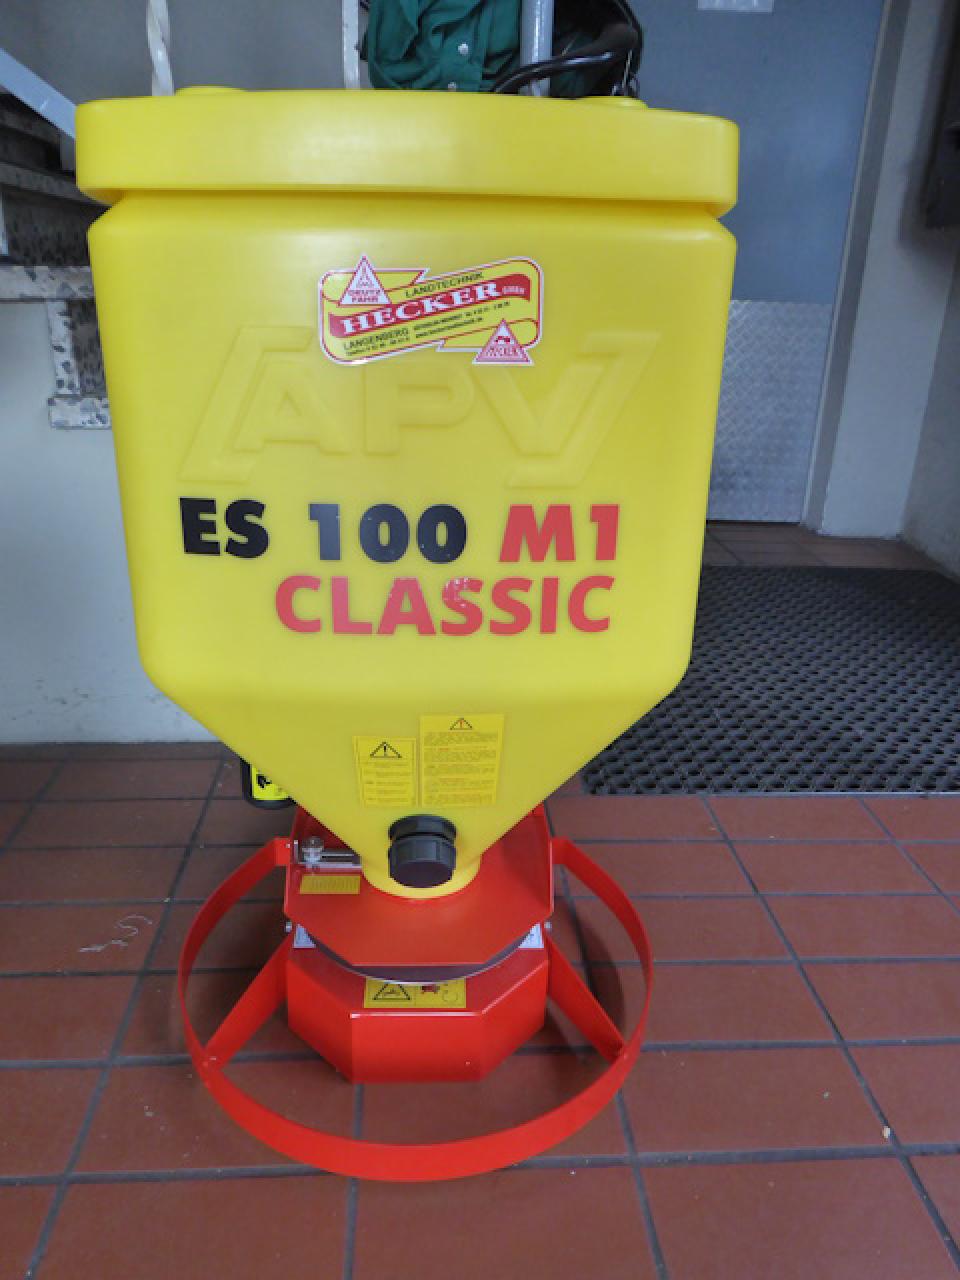  ES 100 M1 Classic